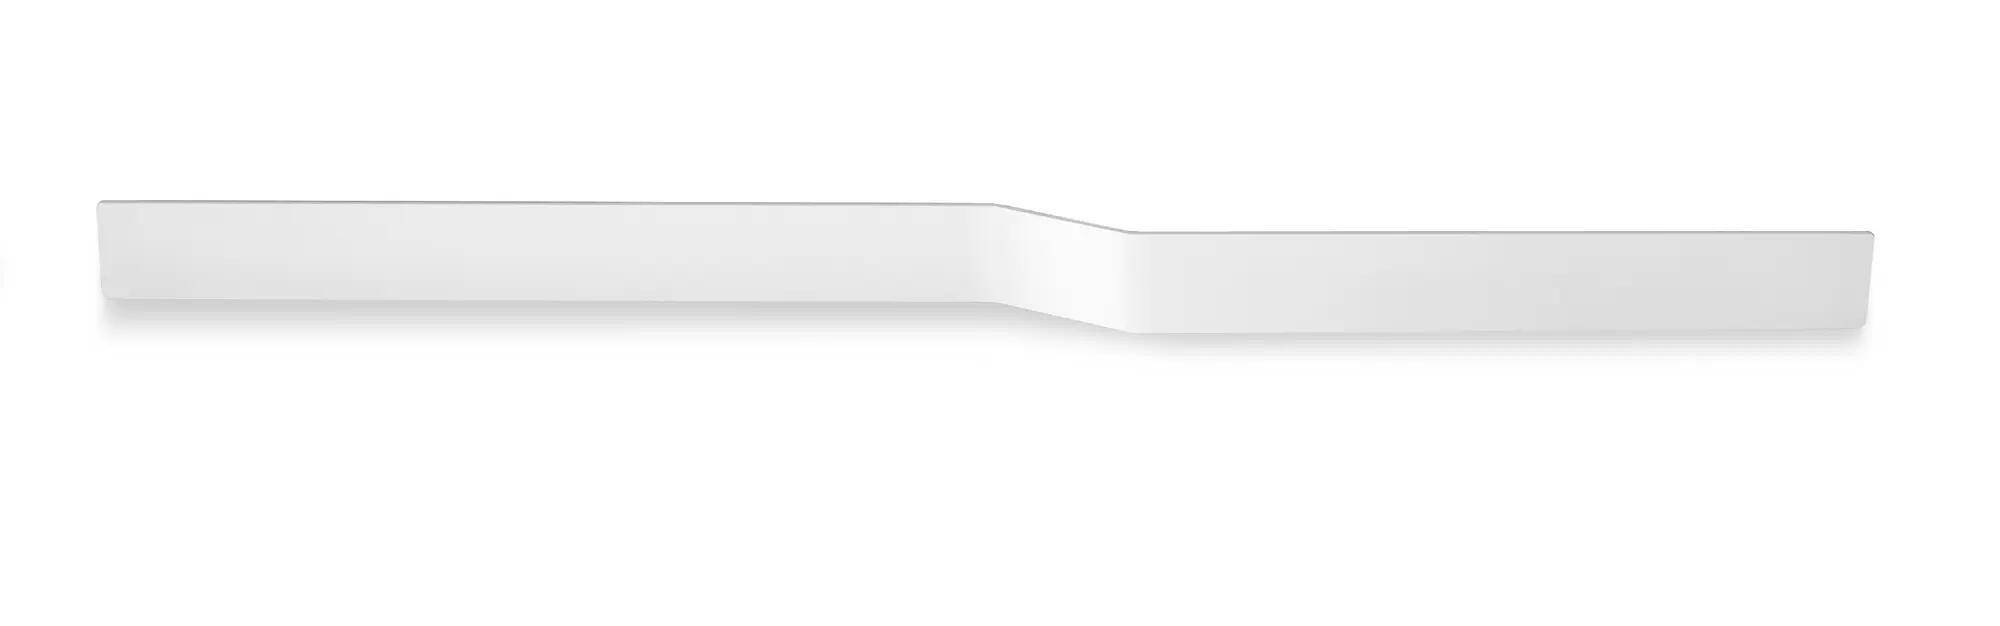 Toallero tokio-osaka blanco x7.5 cm